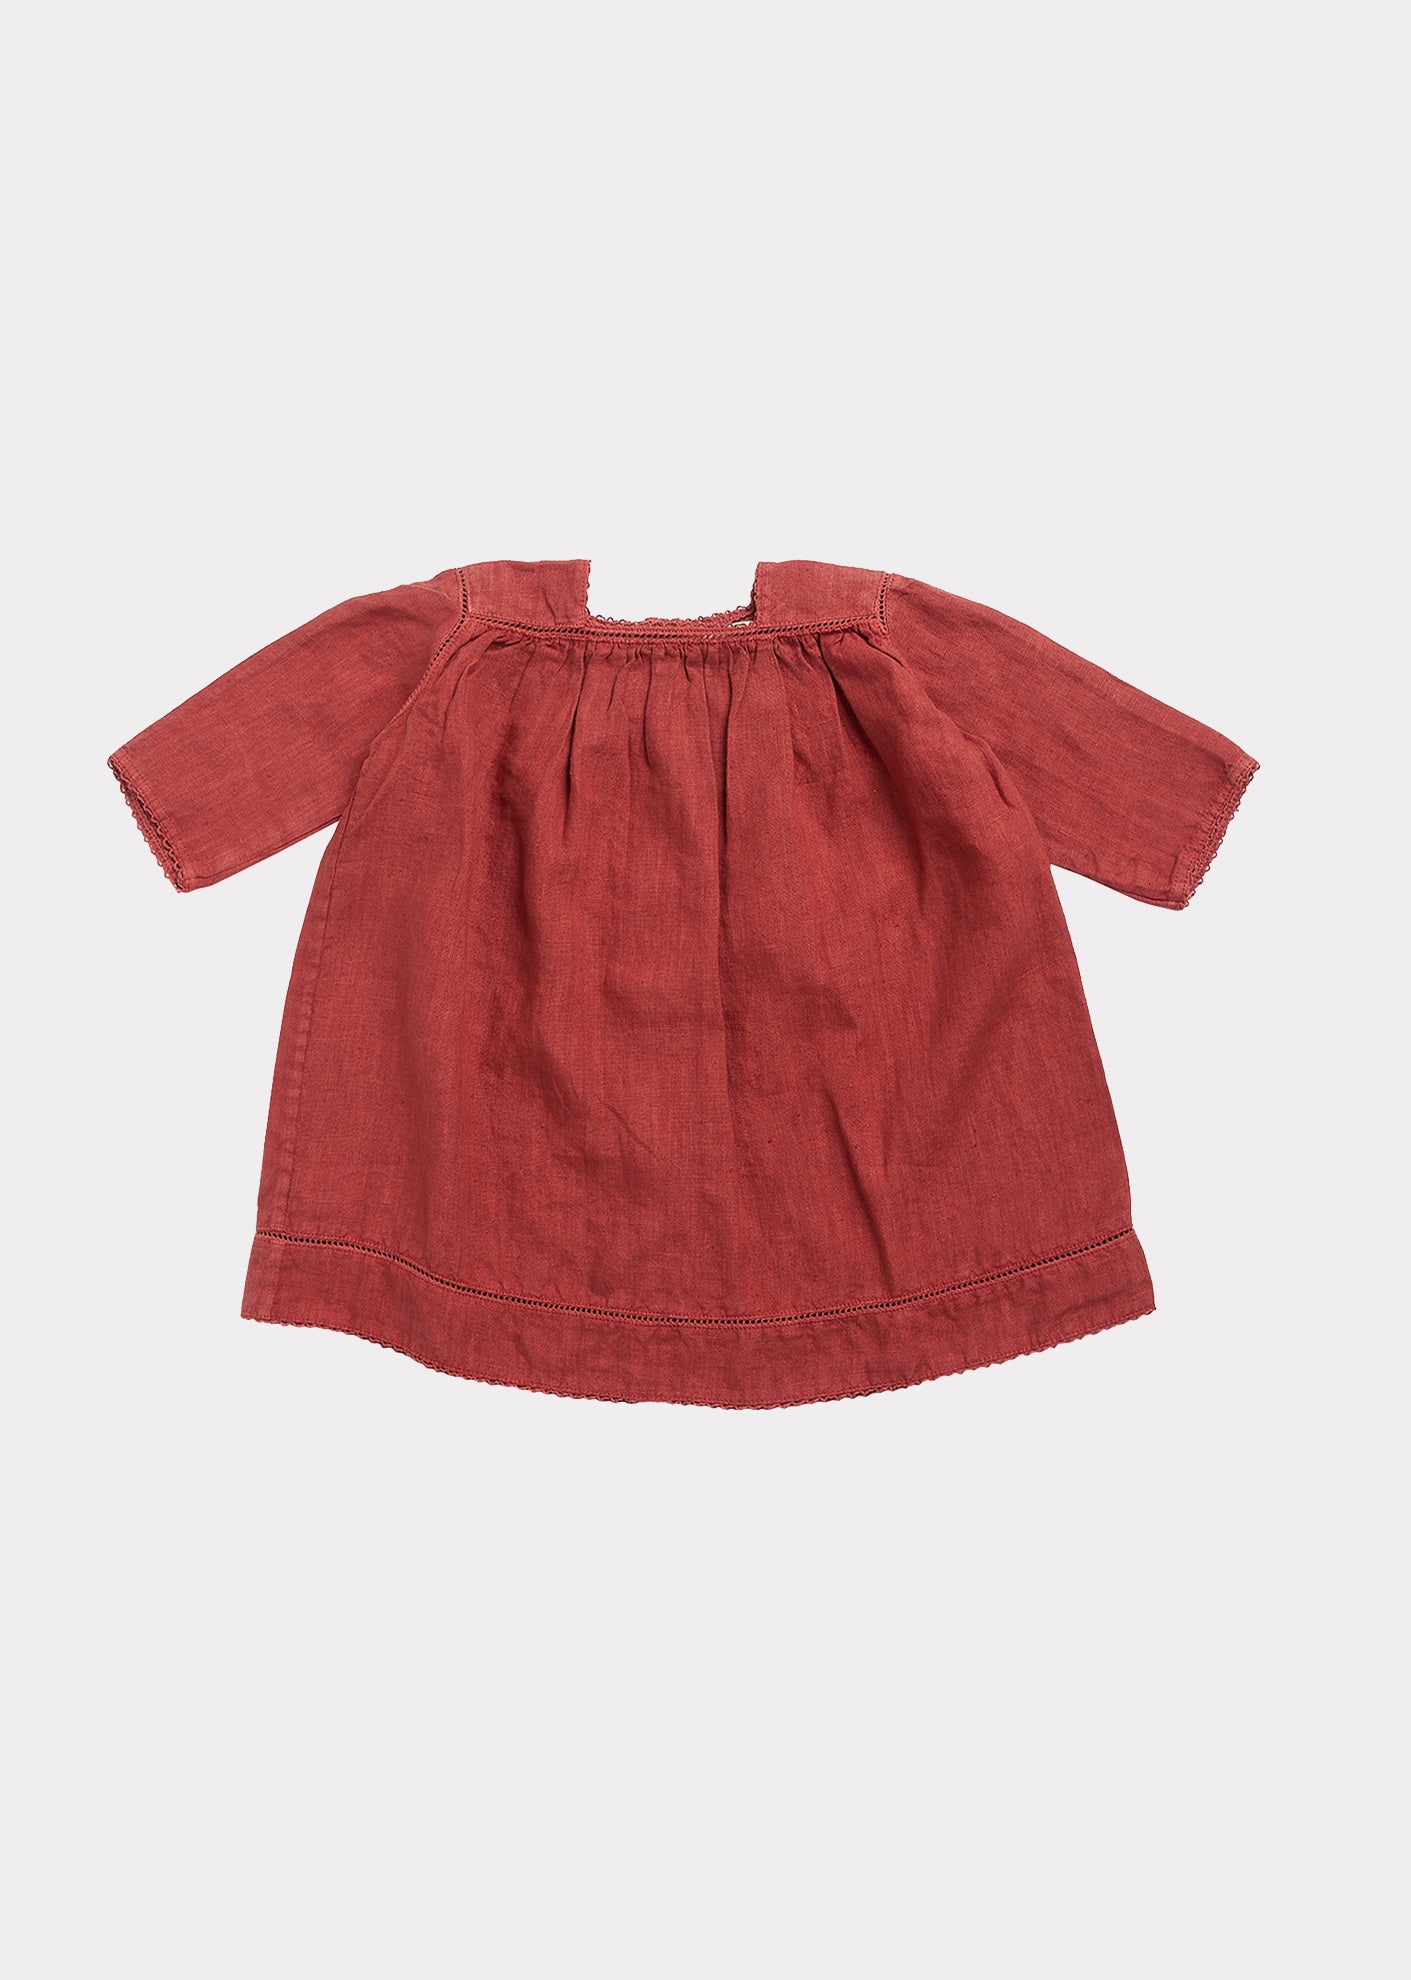 Baby Girls Paprika Red Dress